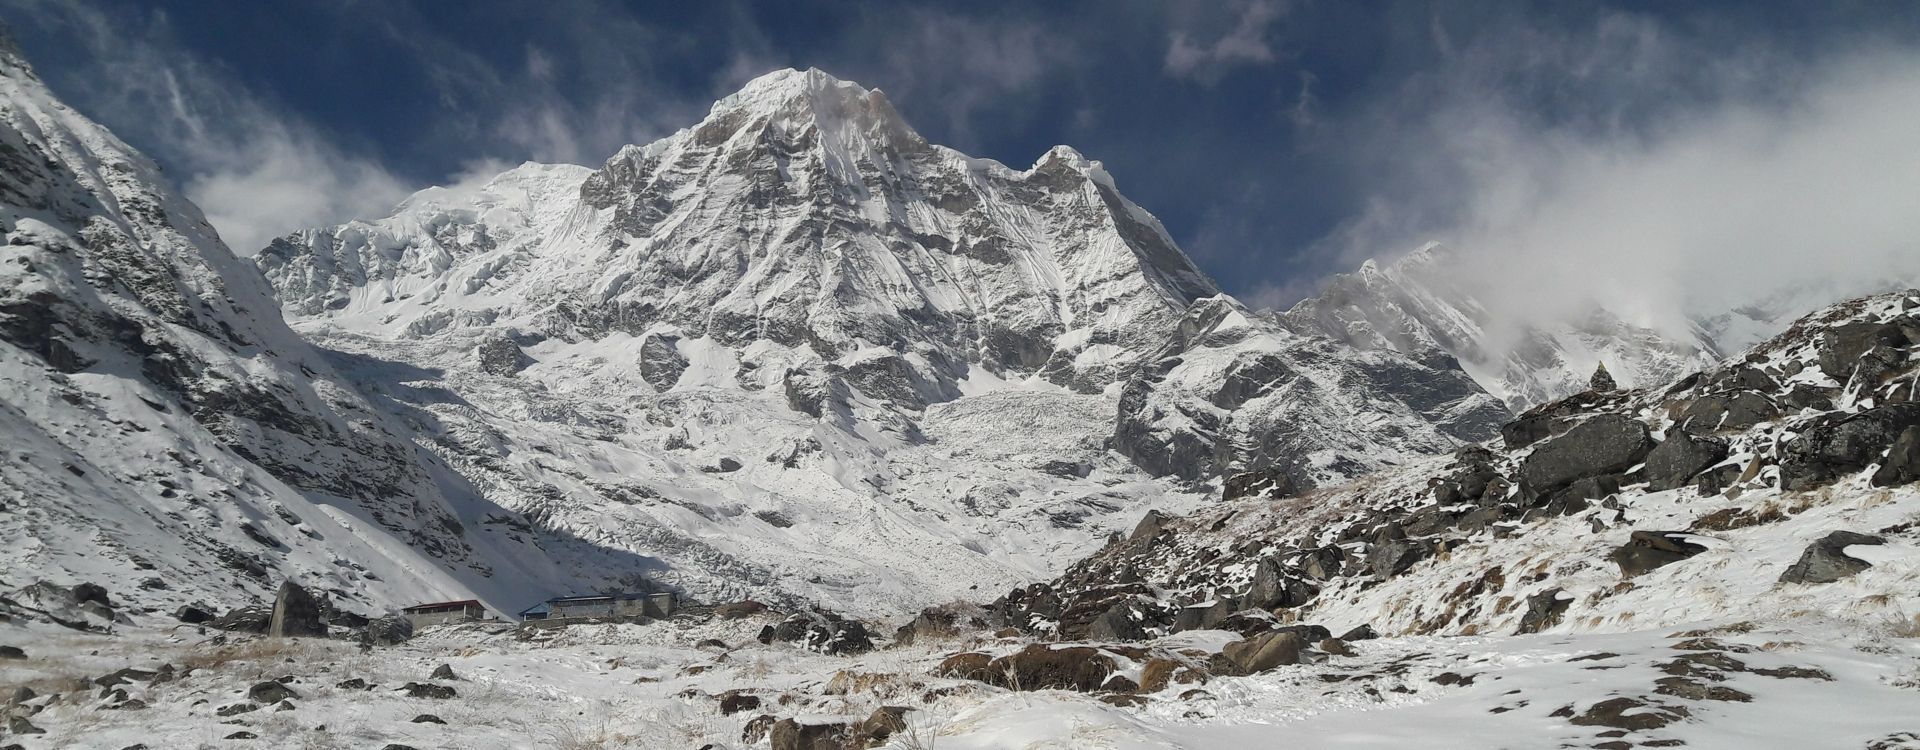 Sherpa Himalaya-Annapurna Base Camp Trek 11.jpg